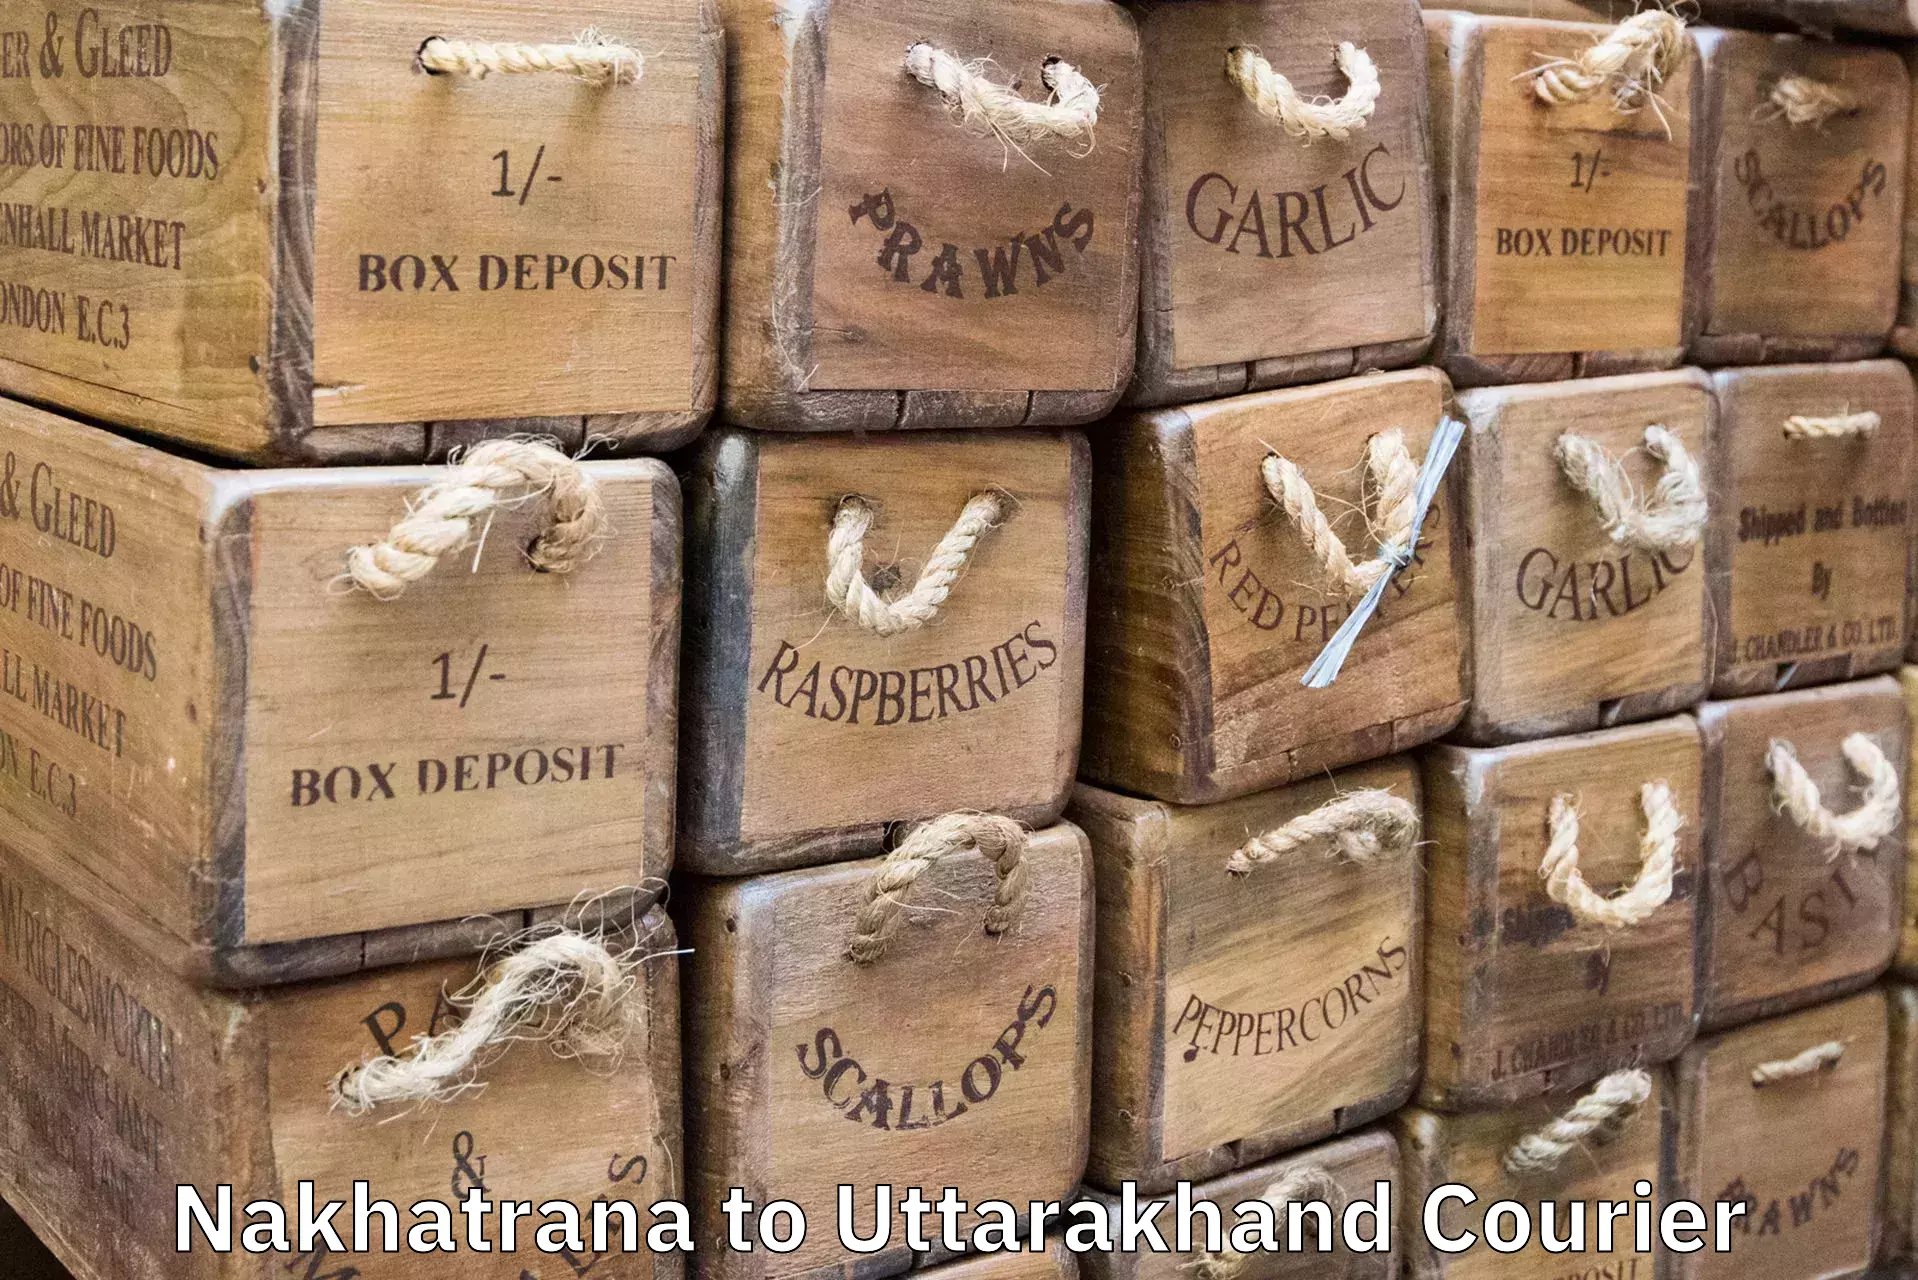 Luggage delivery network Nakhatrana to Uttarakhand